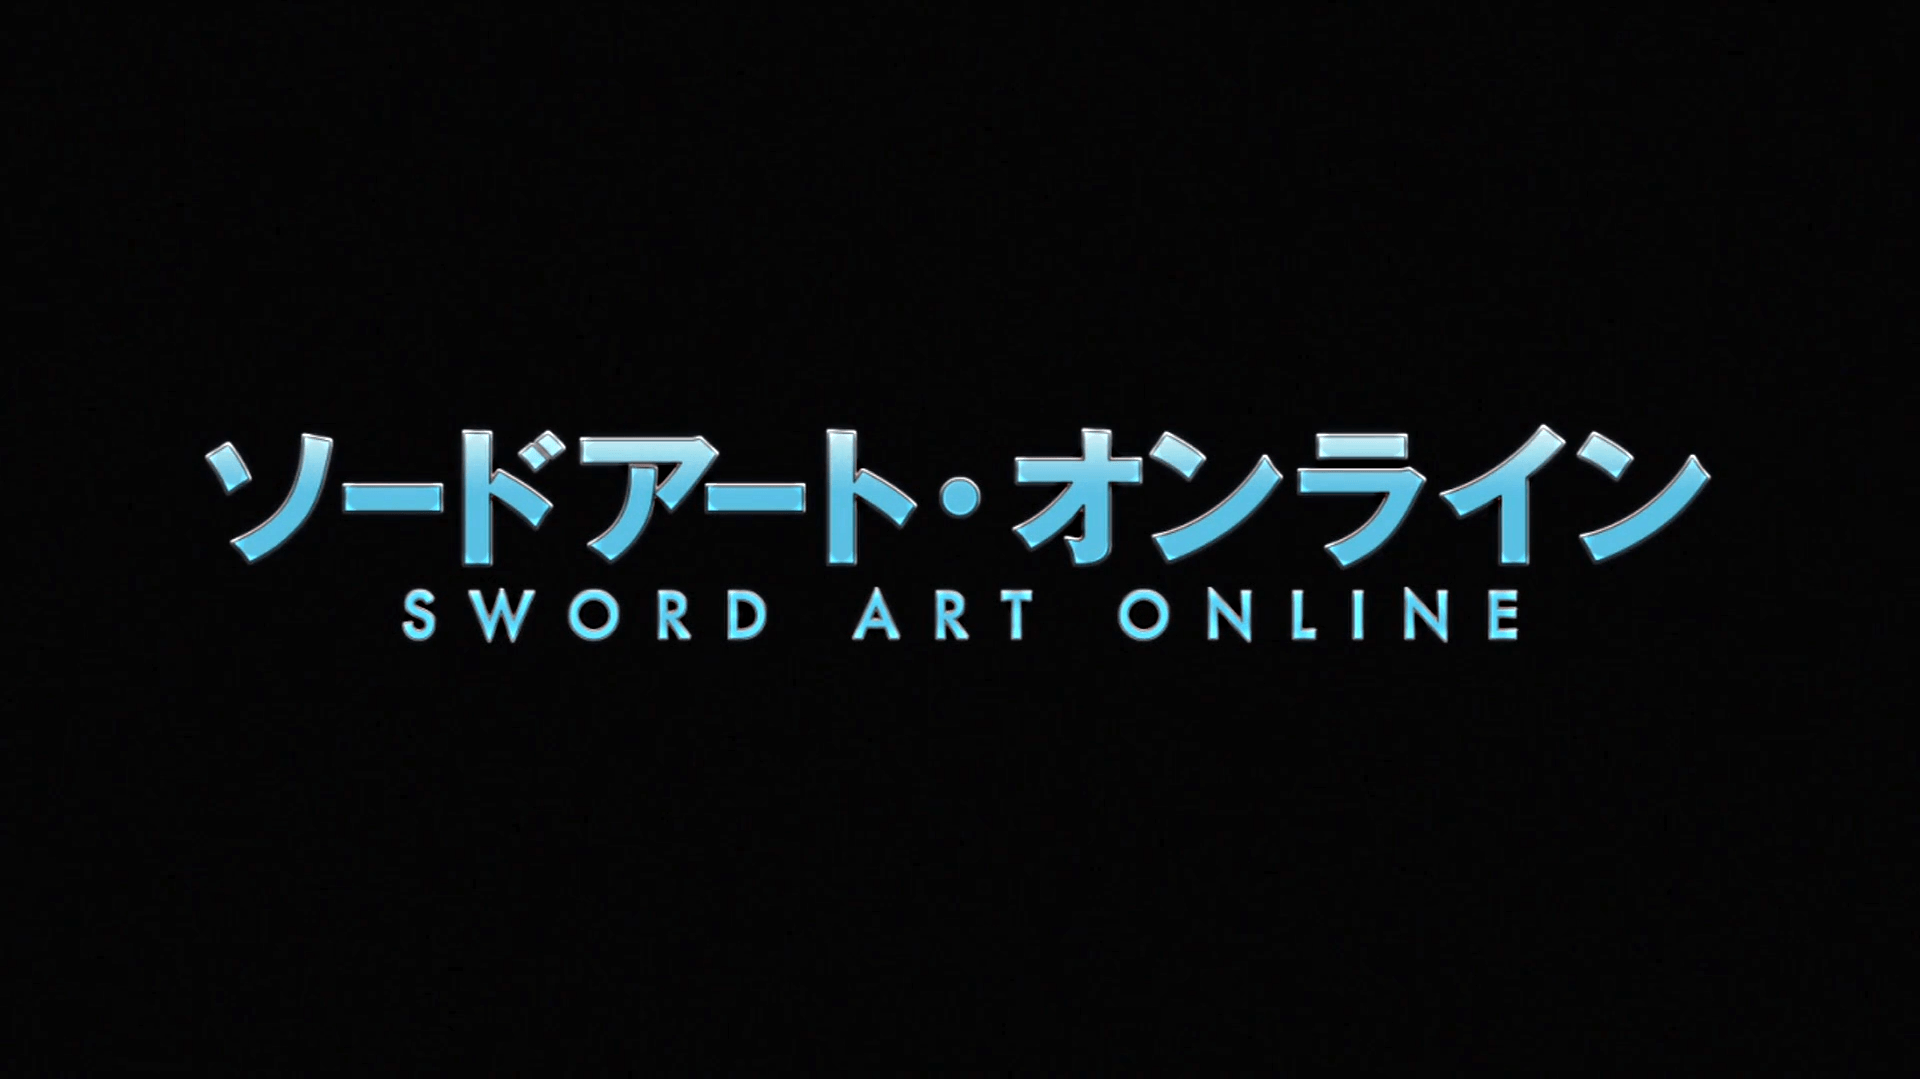 Sao Logo - Sword art online Logos